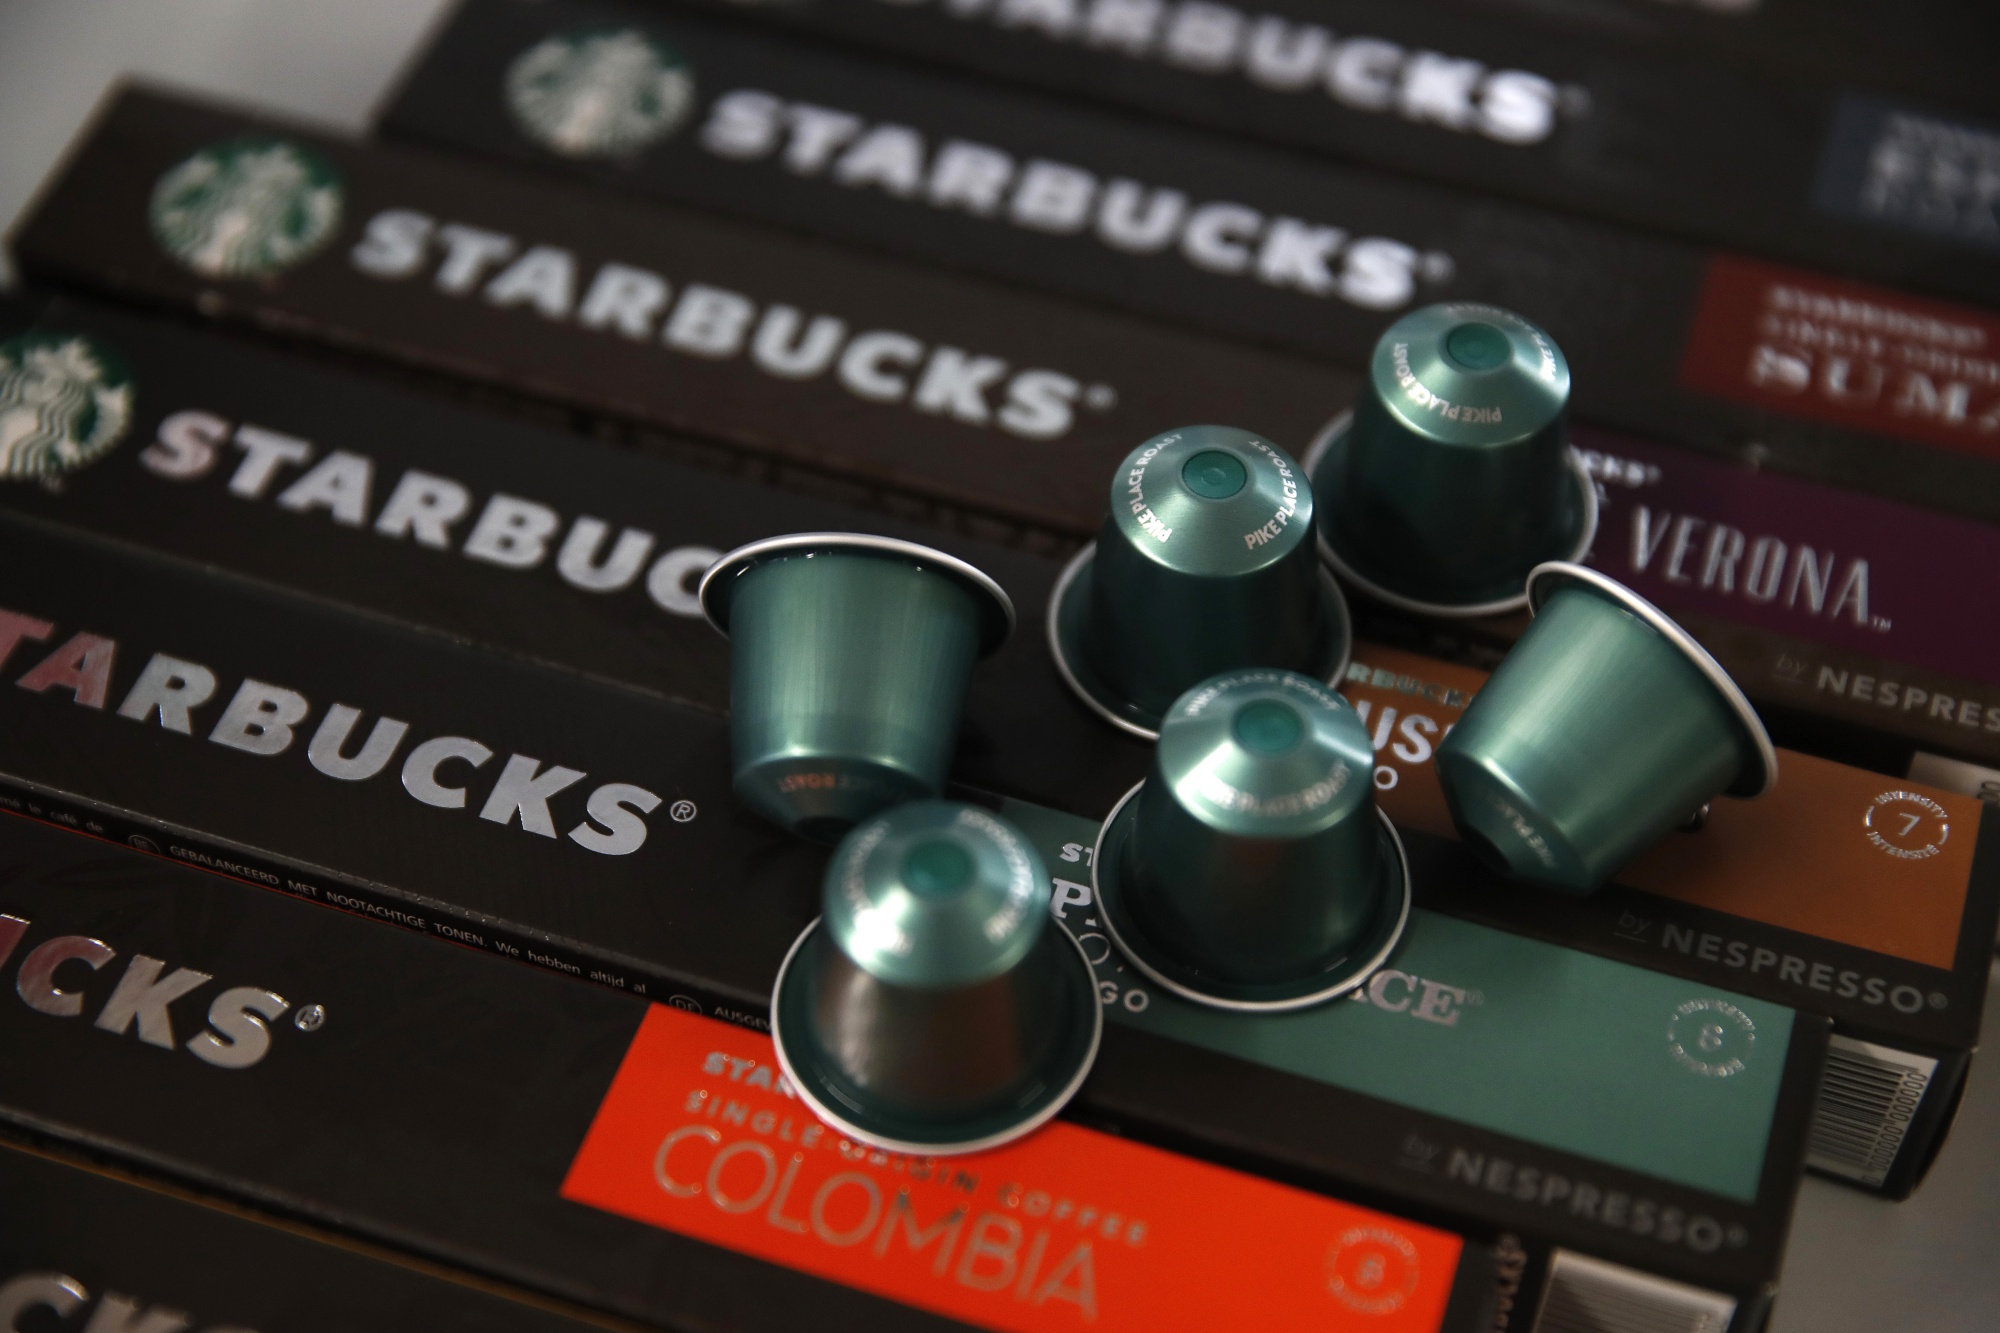 Starbucks® by Nespresso® Coffee